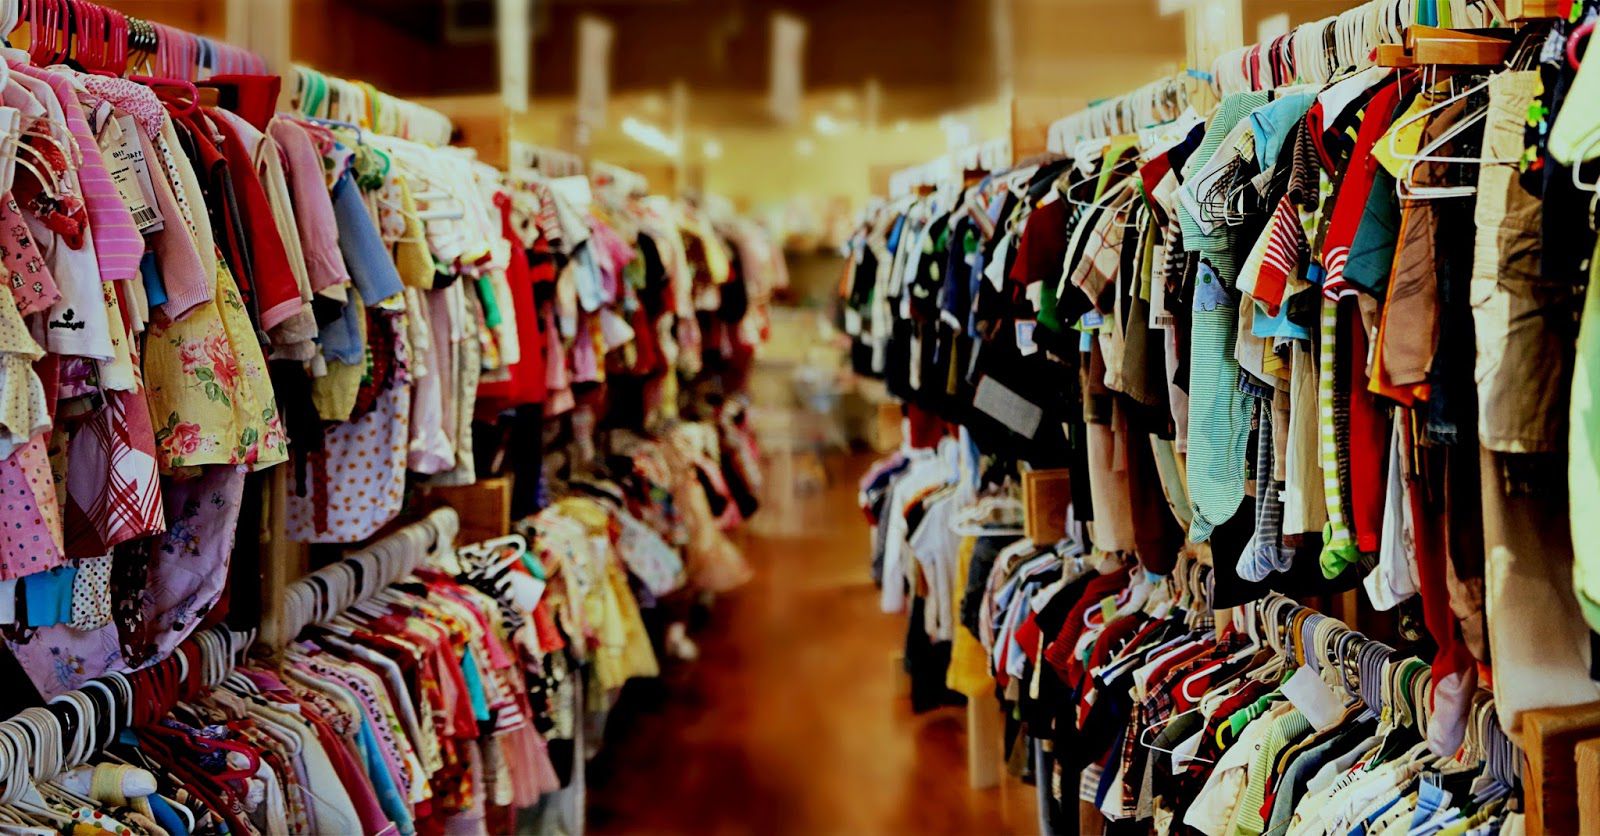 Продажа Интернет Магазина Детской Одежды